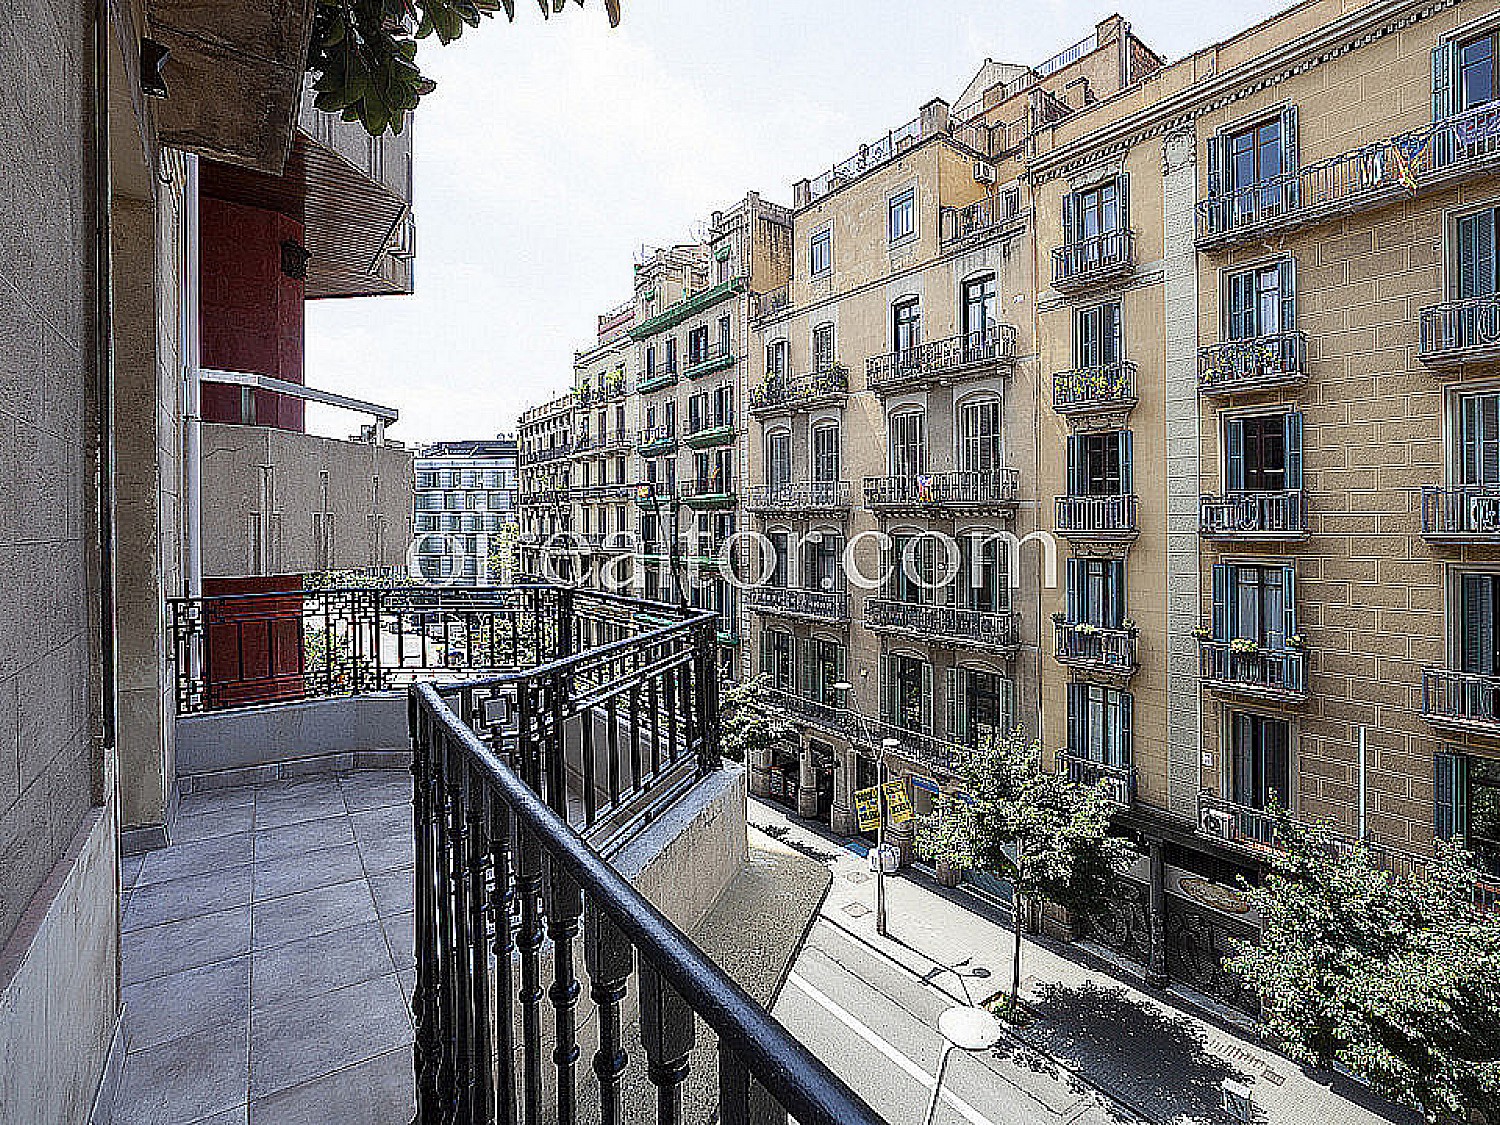 Продается квартира в районе Эшампле Правый, Барселона.